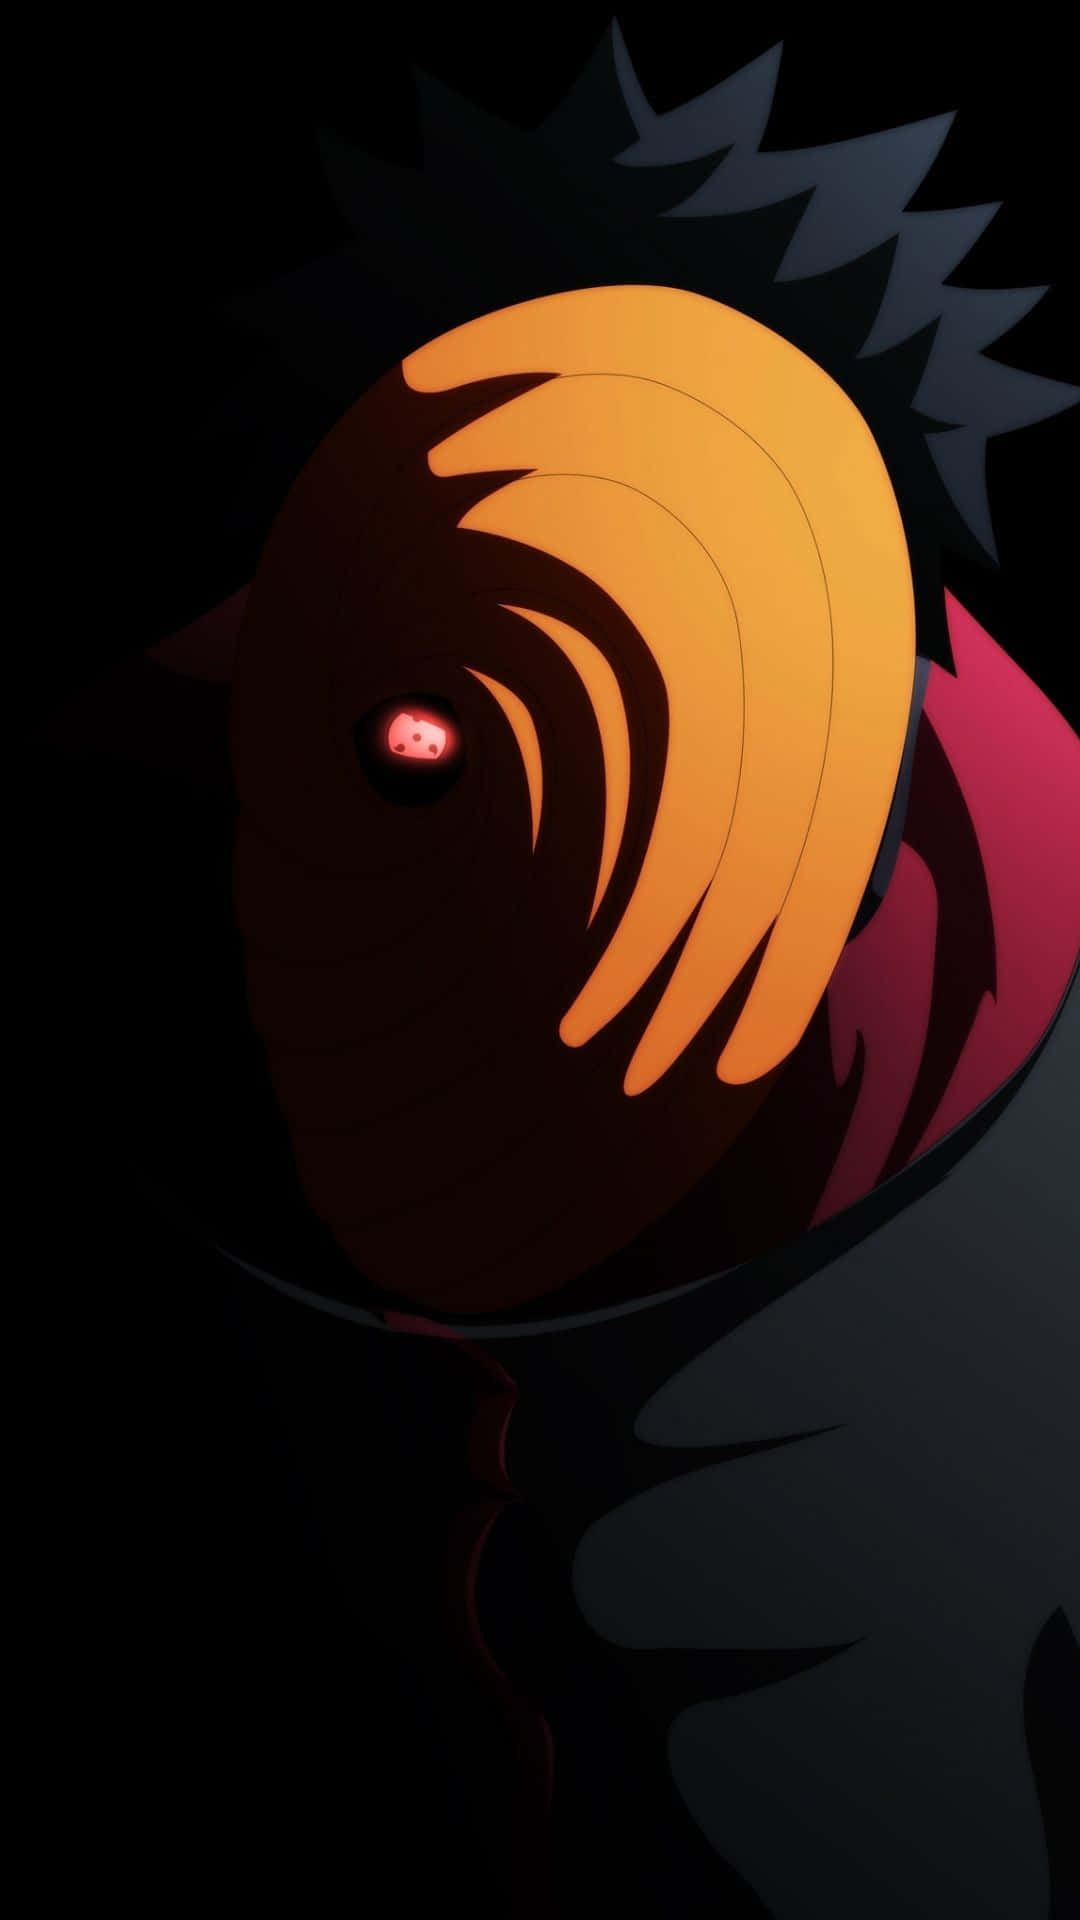 Einschwarzer Und Orange Anime-charakter Mit Einem Roten Gesicht. Wallpaper